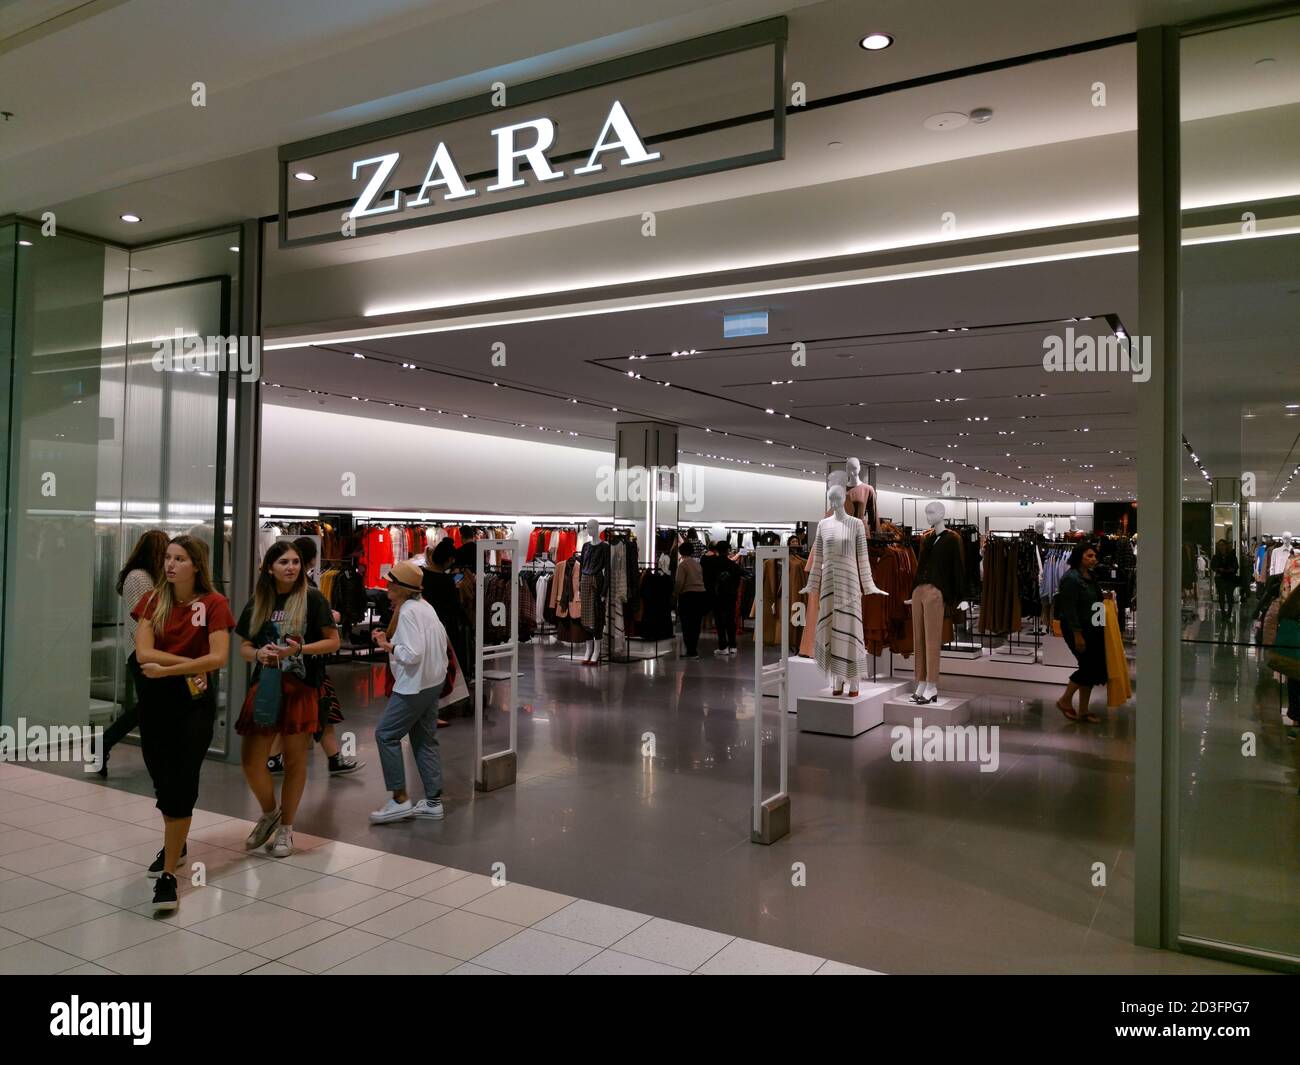 AUCKLAND, NUEVA ZELANDA - 17 de abril de 2019: Auckland / Nueva Zelanda -  17 2019 de abril: Vista de la tienda Zara dentro del centro comercial  Sylvia Park Fotografía de stock - Alamy